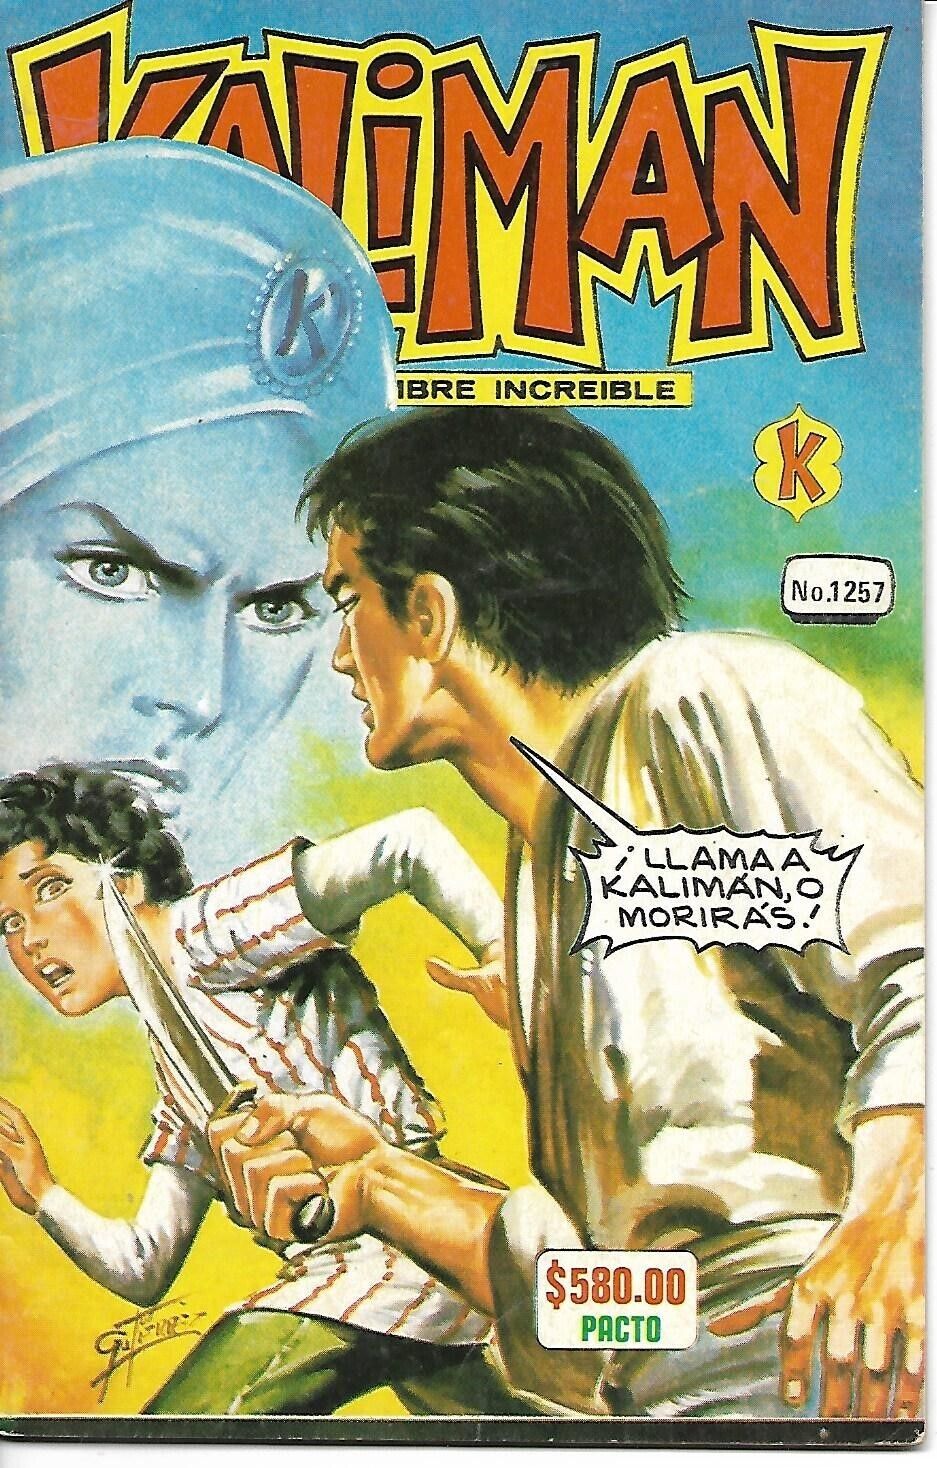 Kaliman El Hombre Increible #1257 - Diciembre 29, 1989